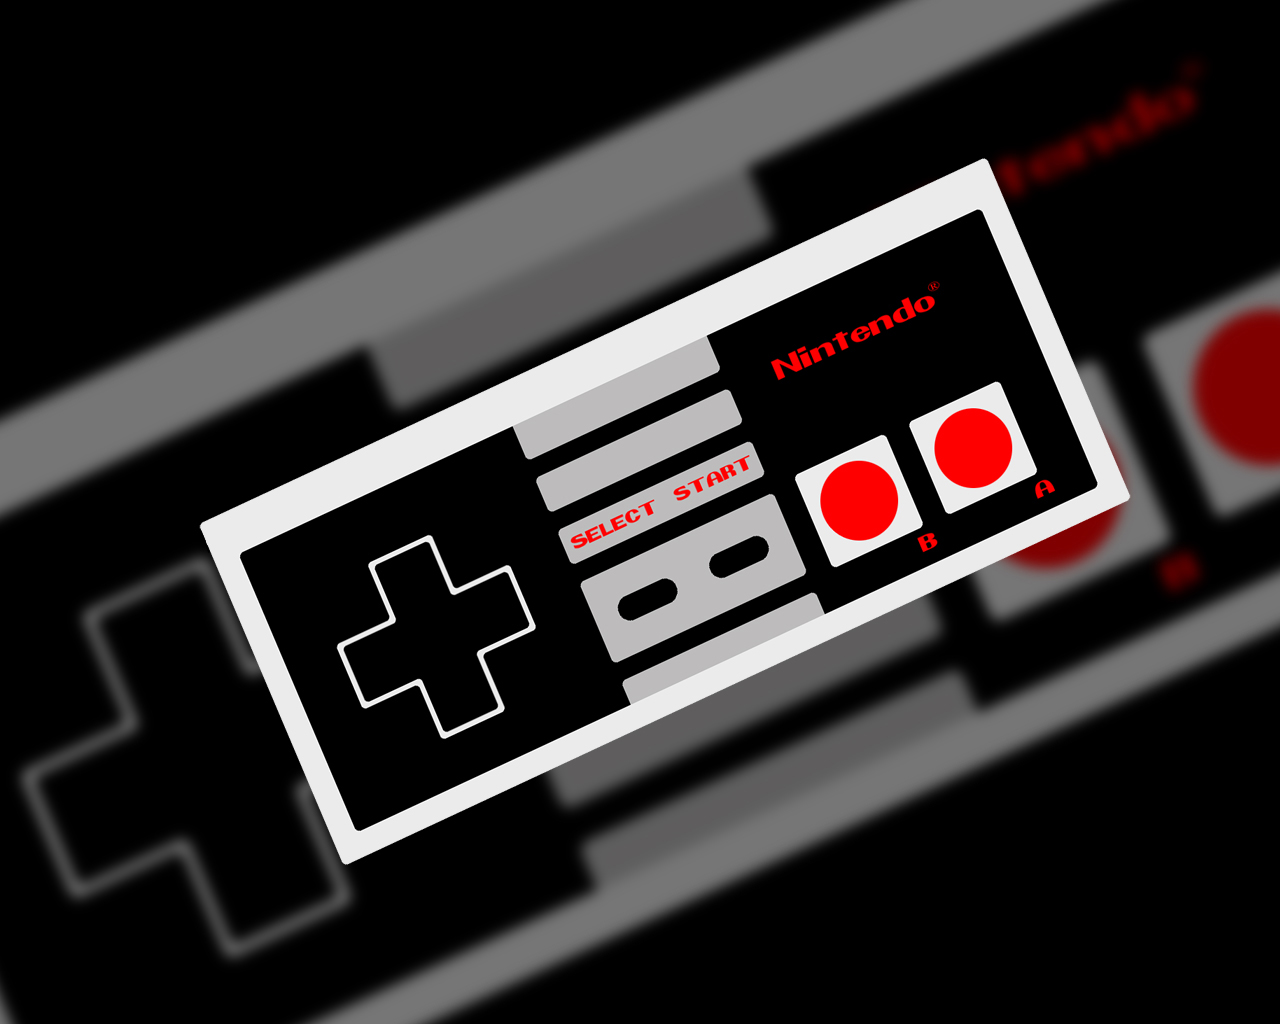 Nintendo Nes Controller Wallpaper Logo